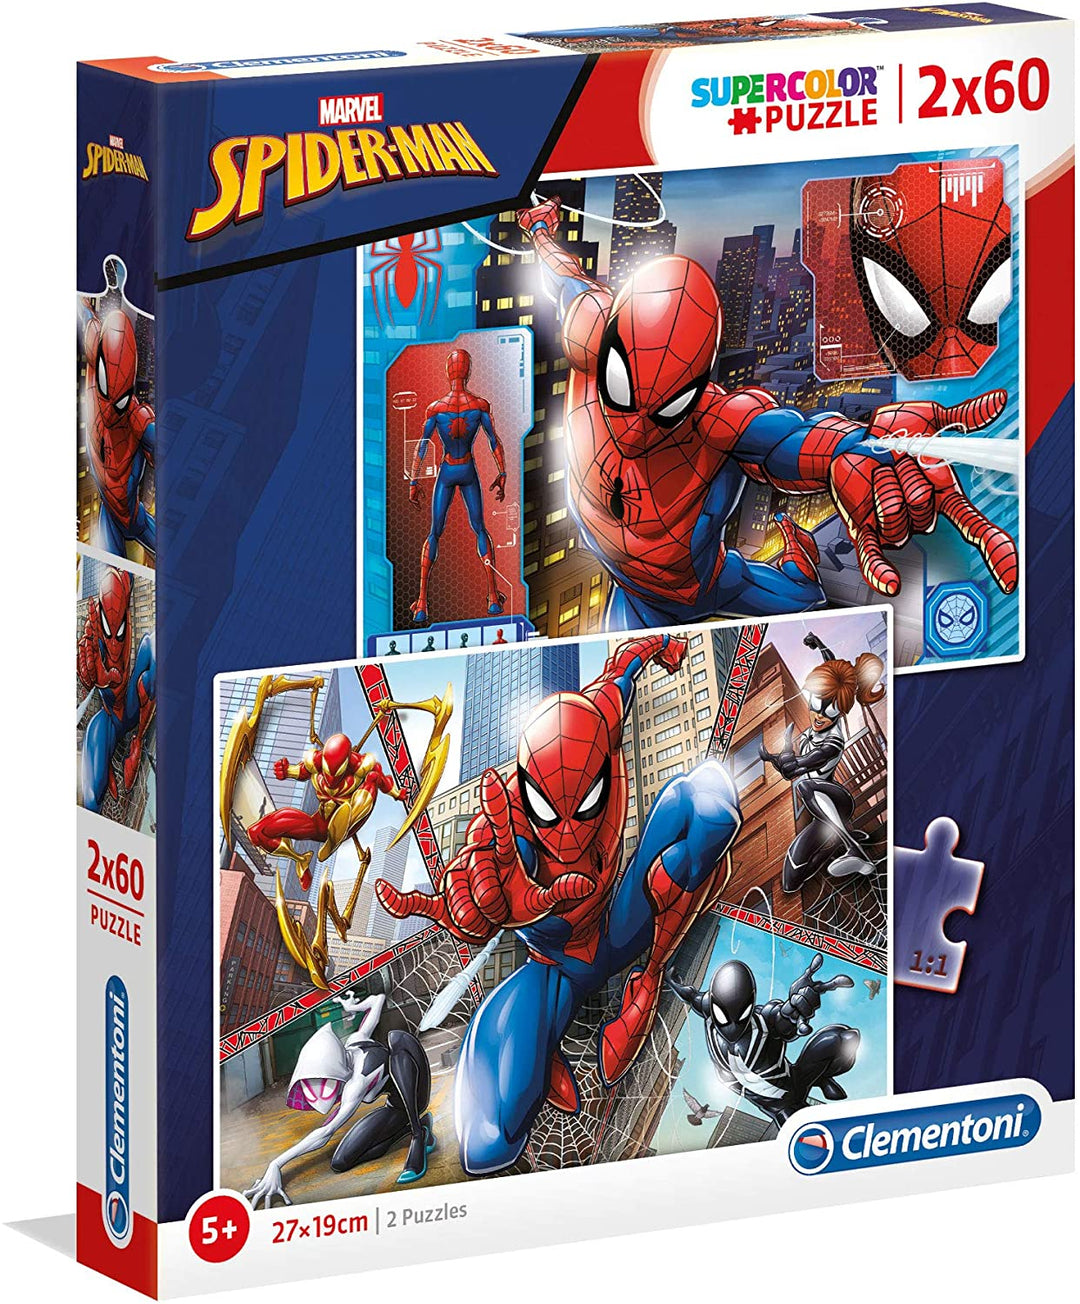 Clementoni - 21608 - Supercolur Puzzle for children - Spiderman - 2 x 60 Pieces Puzzle